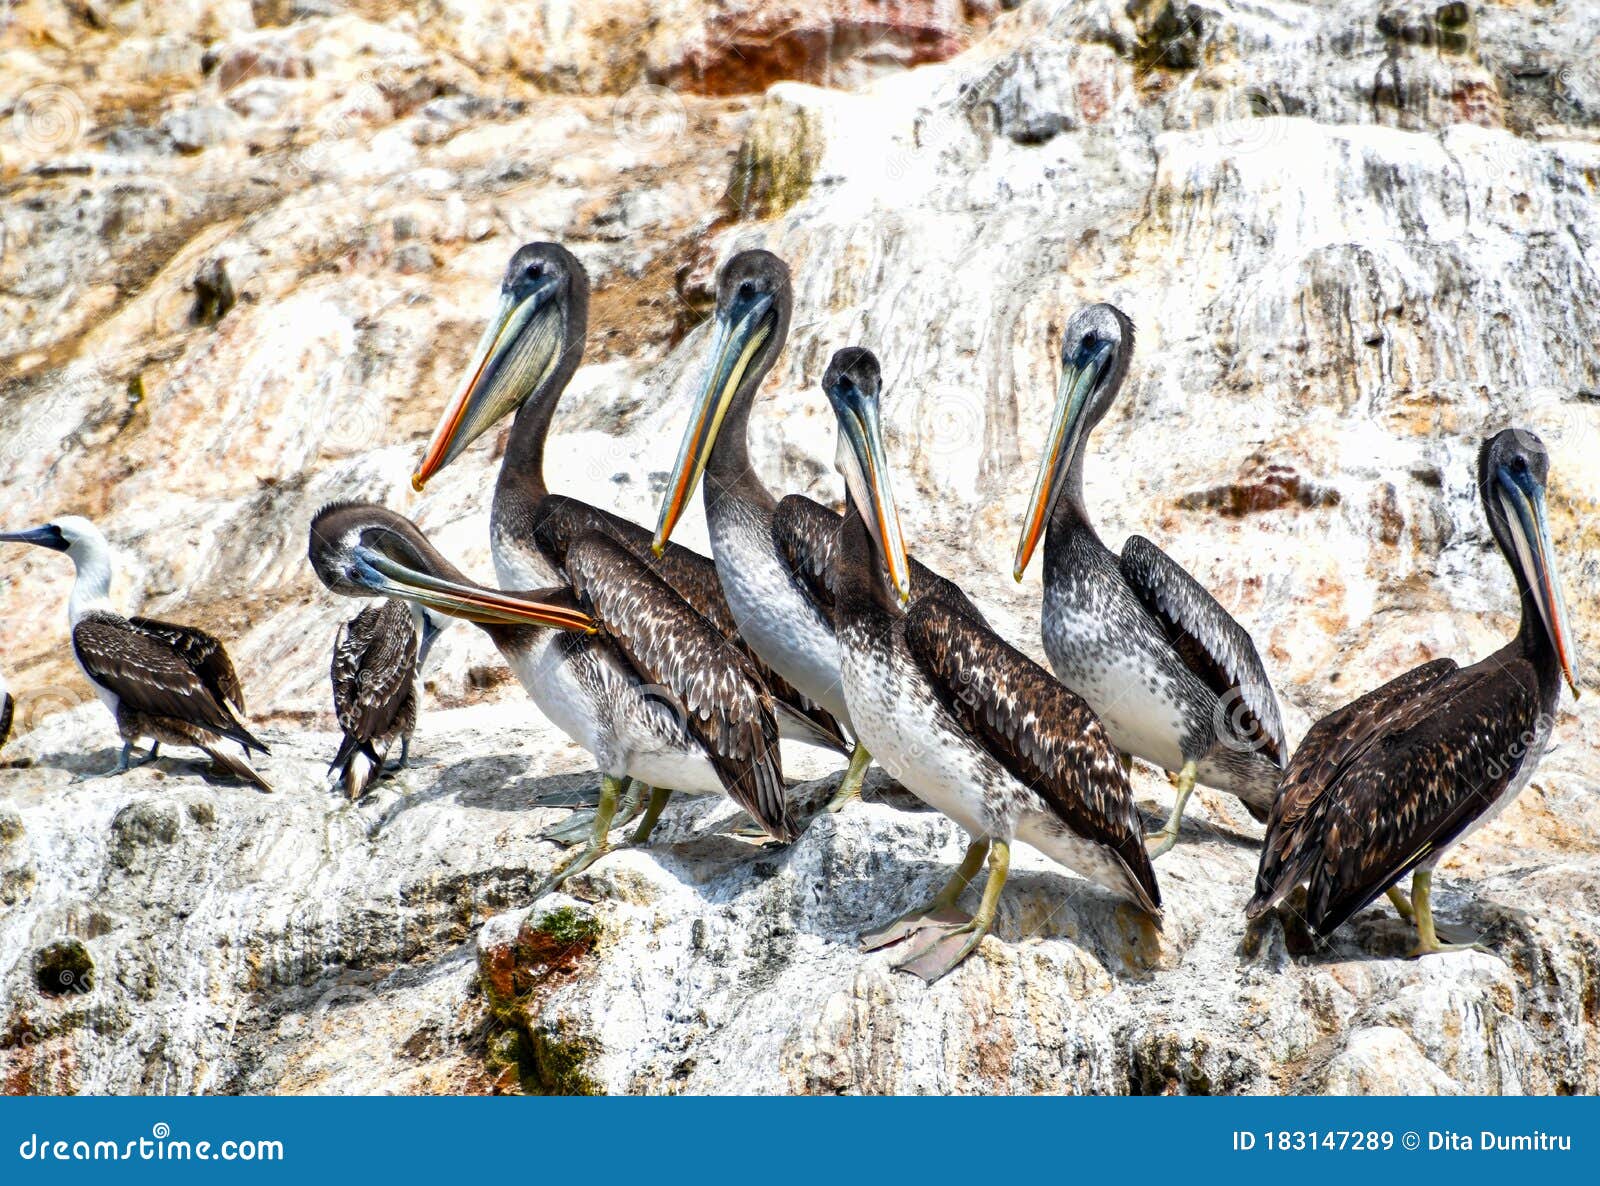 pelicans in the ballestas islands